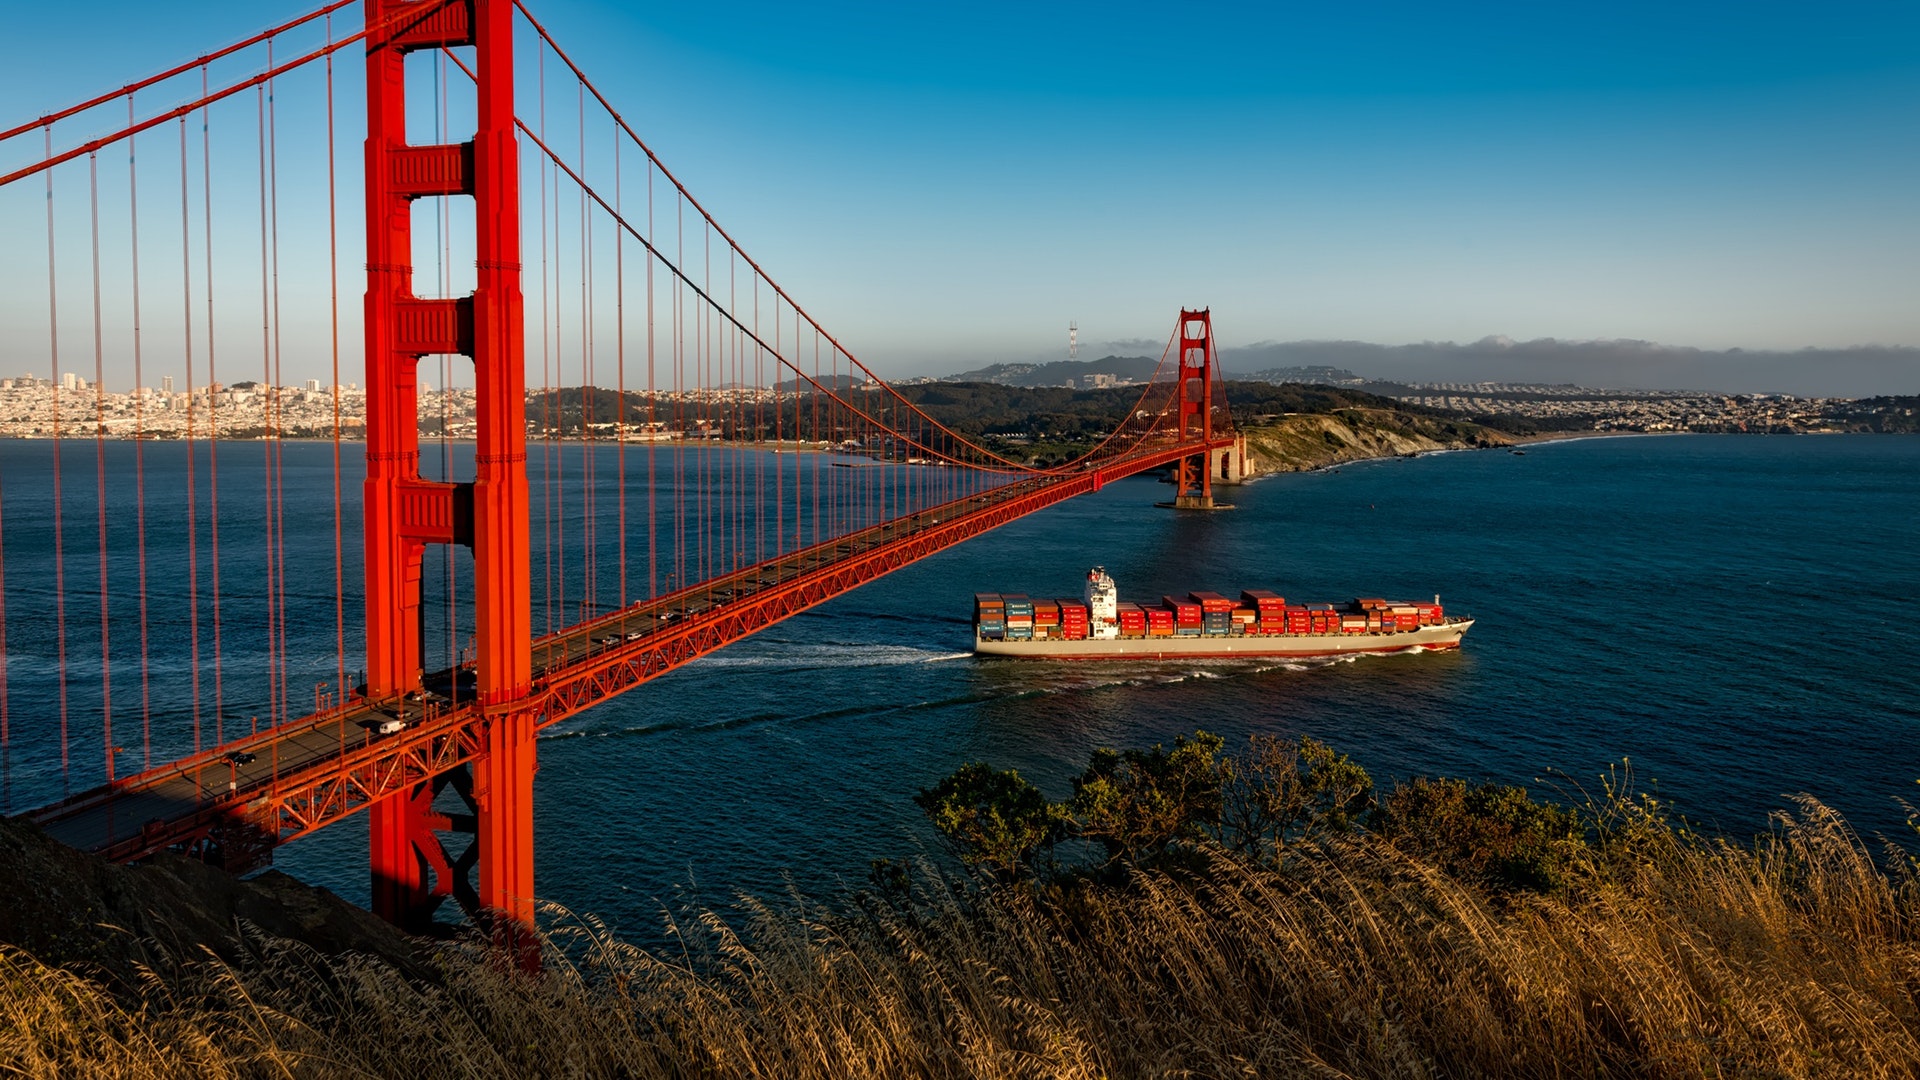 Golden Gate Bridge , HD Wallpaper & Backgrounds